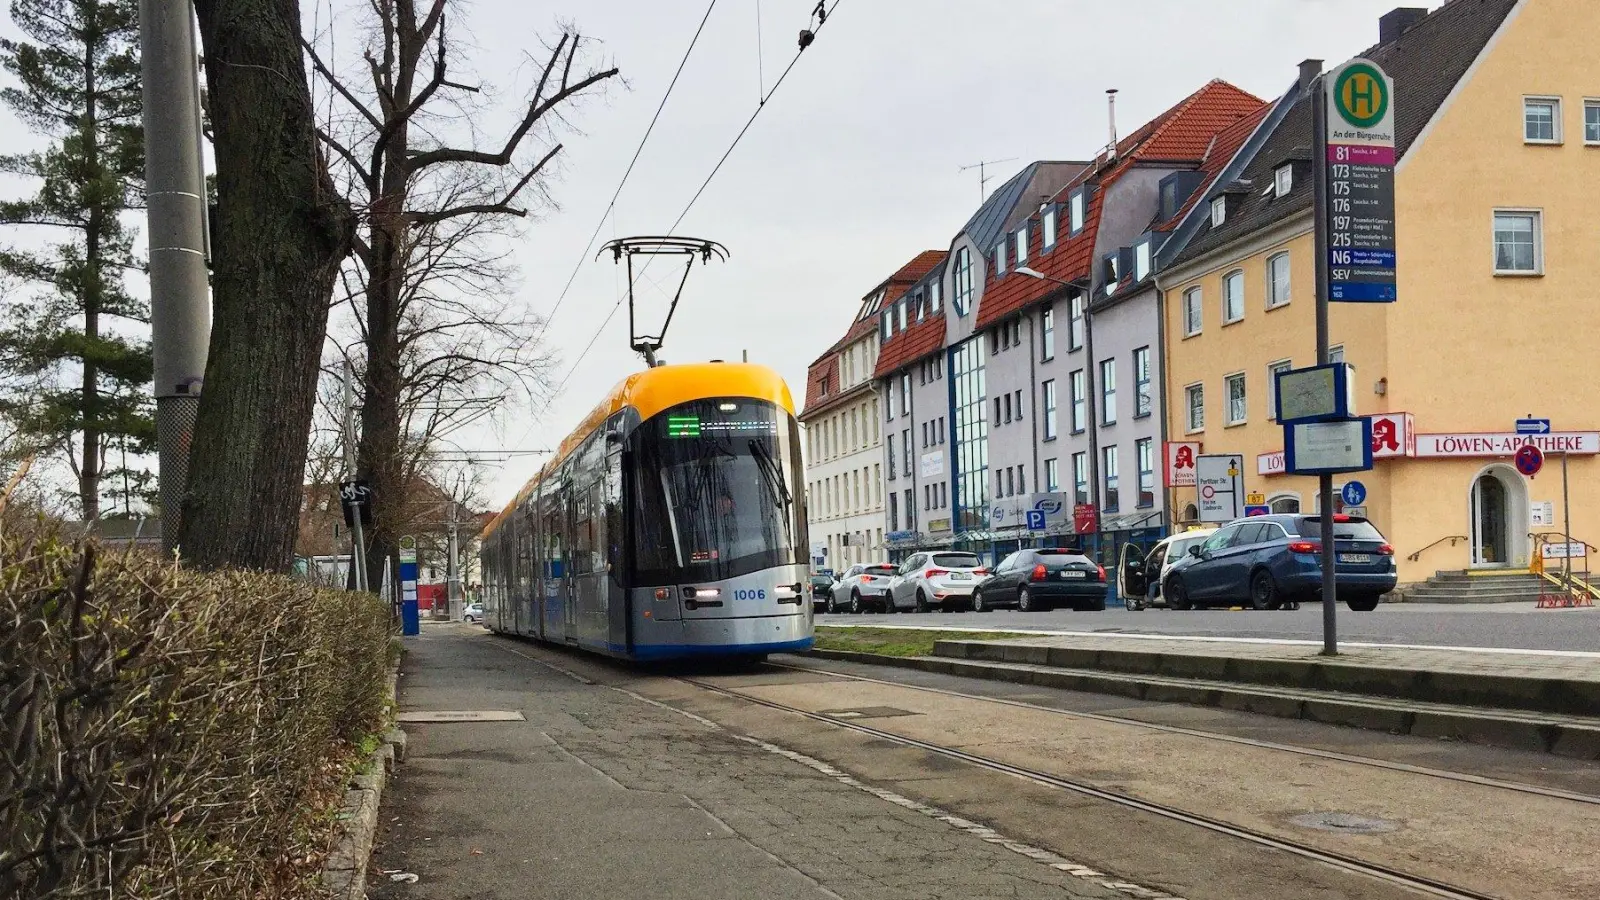 Barrierefreie Straßenbahnhaltestellen in Taucha: SPD drängt auf Gespräch (Foto: taucha-kompakt.de)